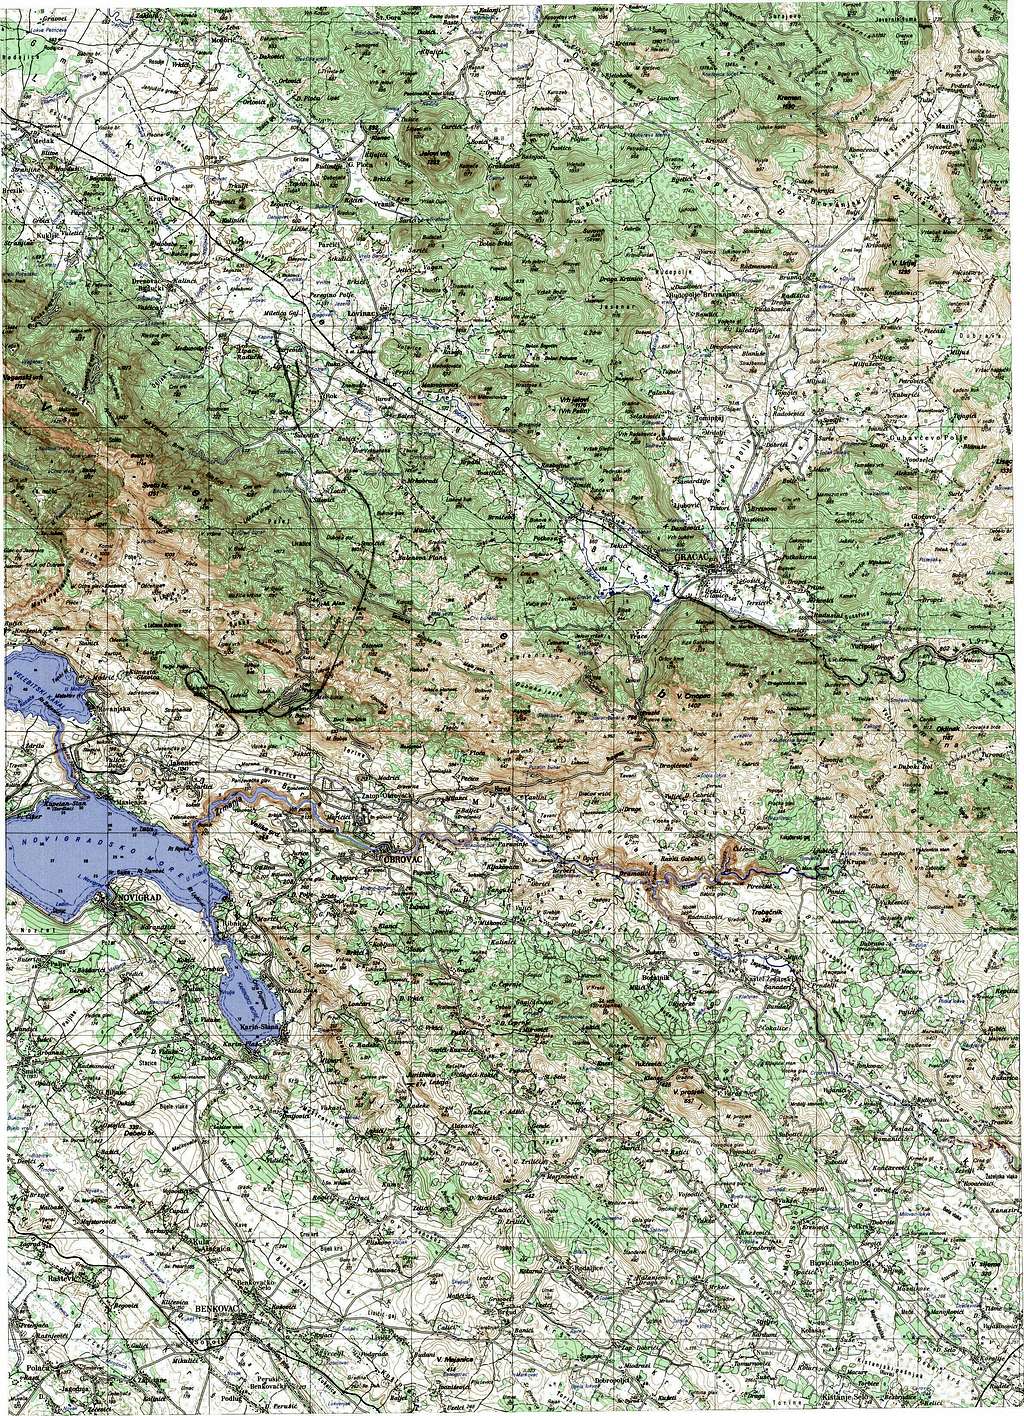 SE Velebit large scale map